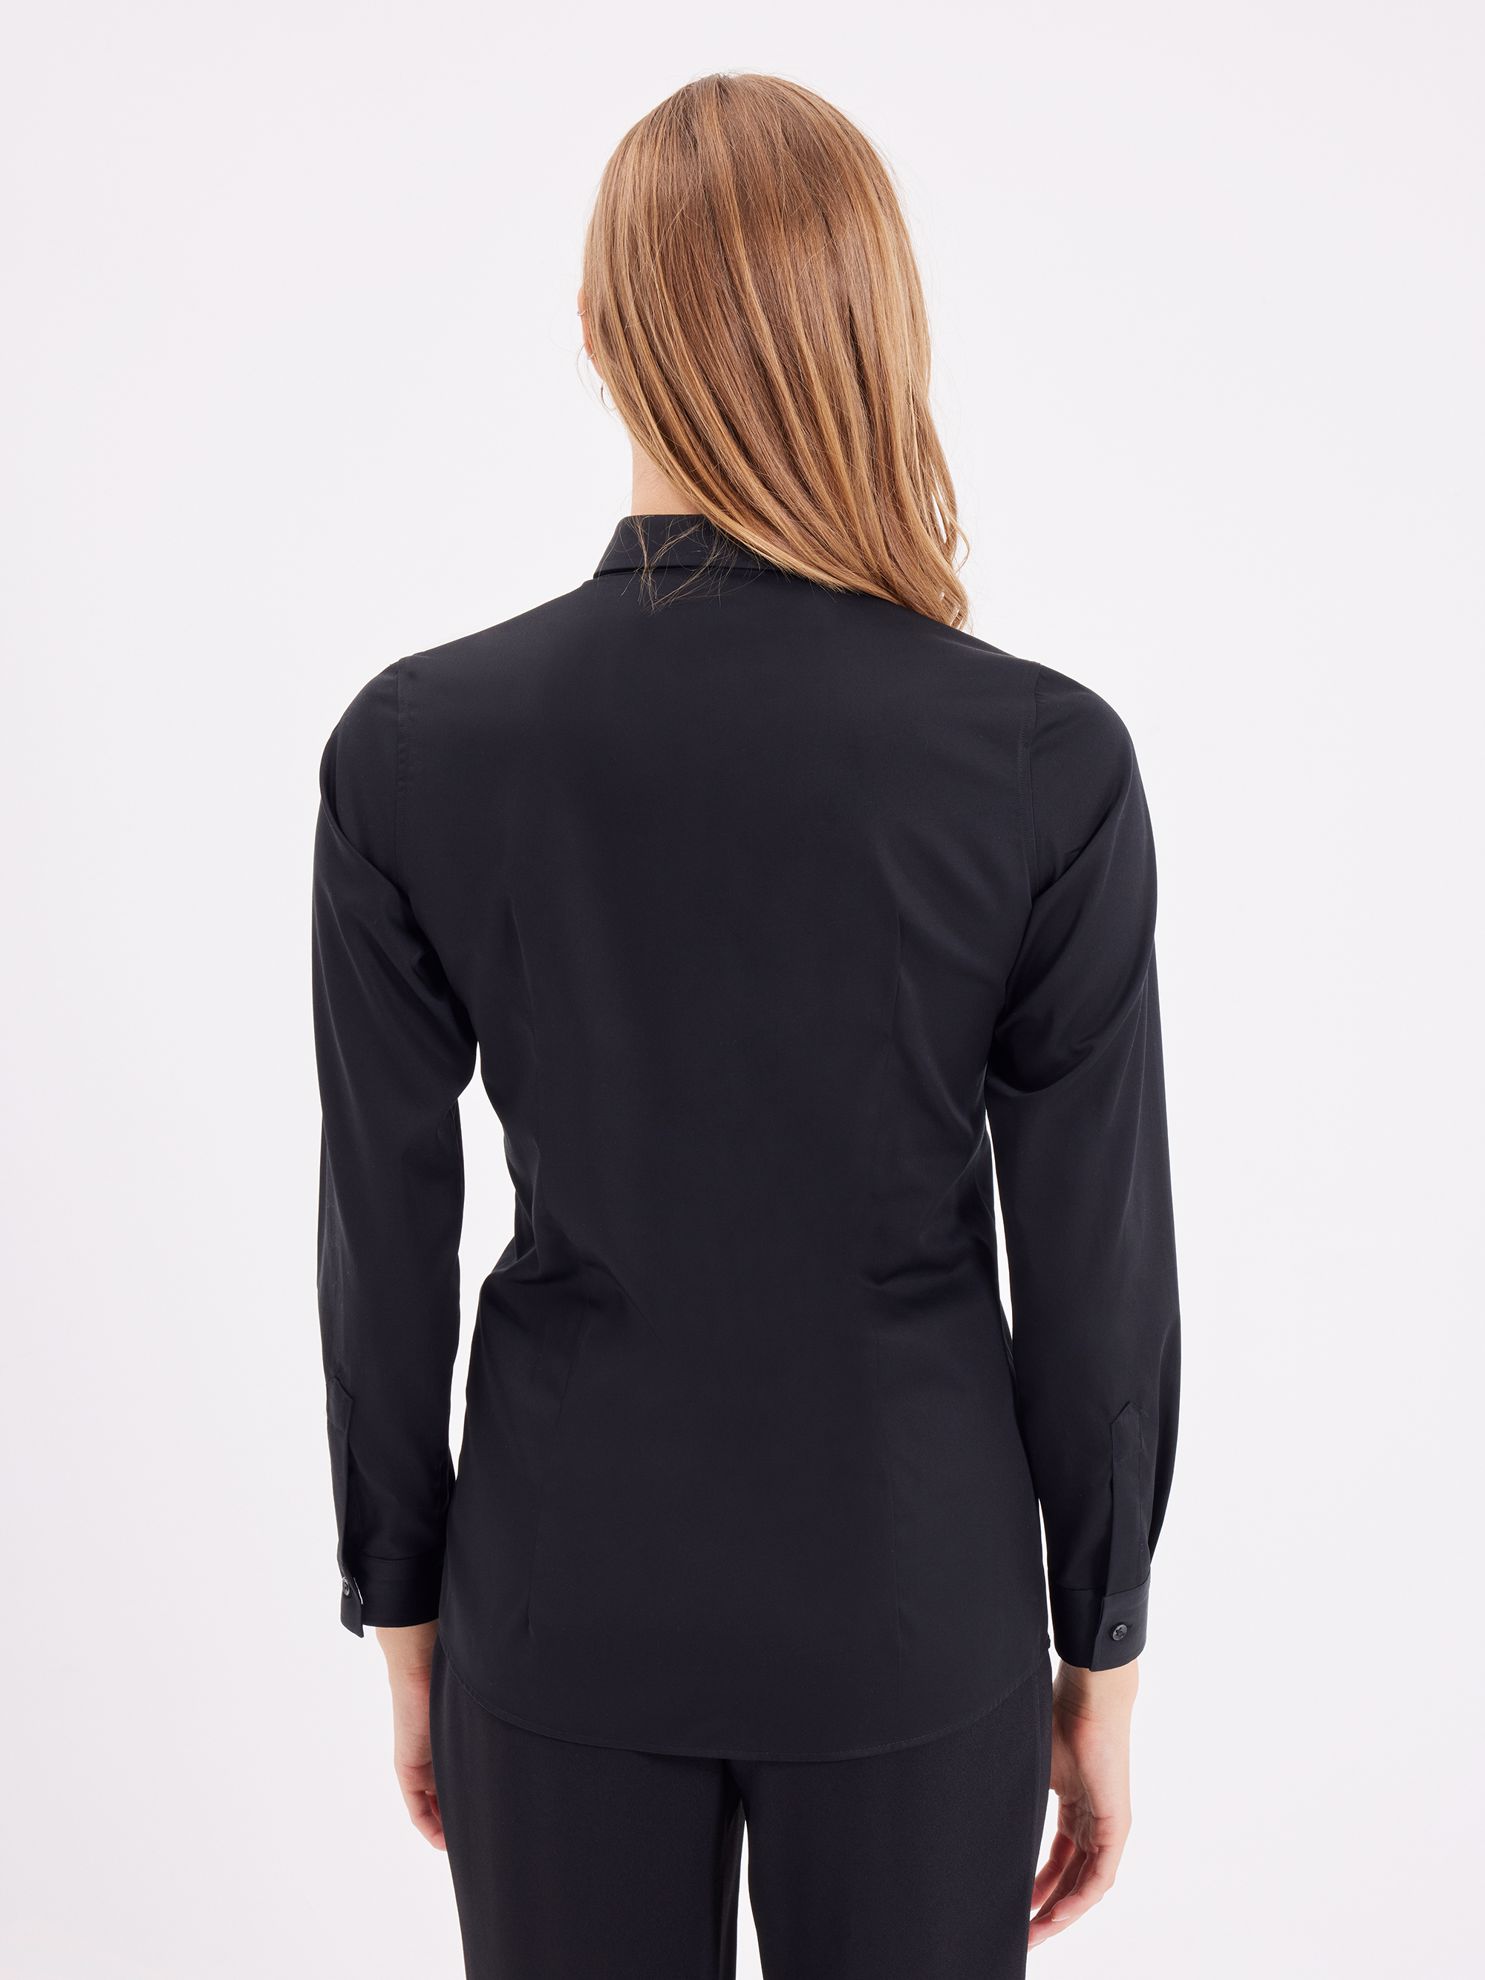 Karaca Kadın Gömlek-Siyah. ürün görseli